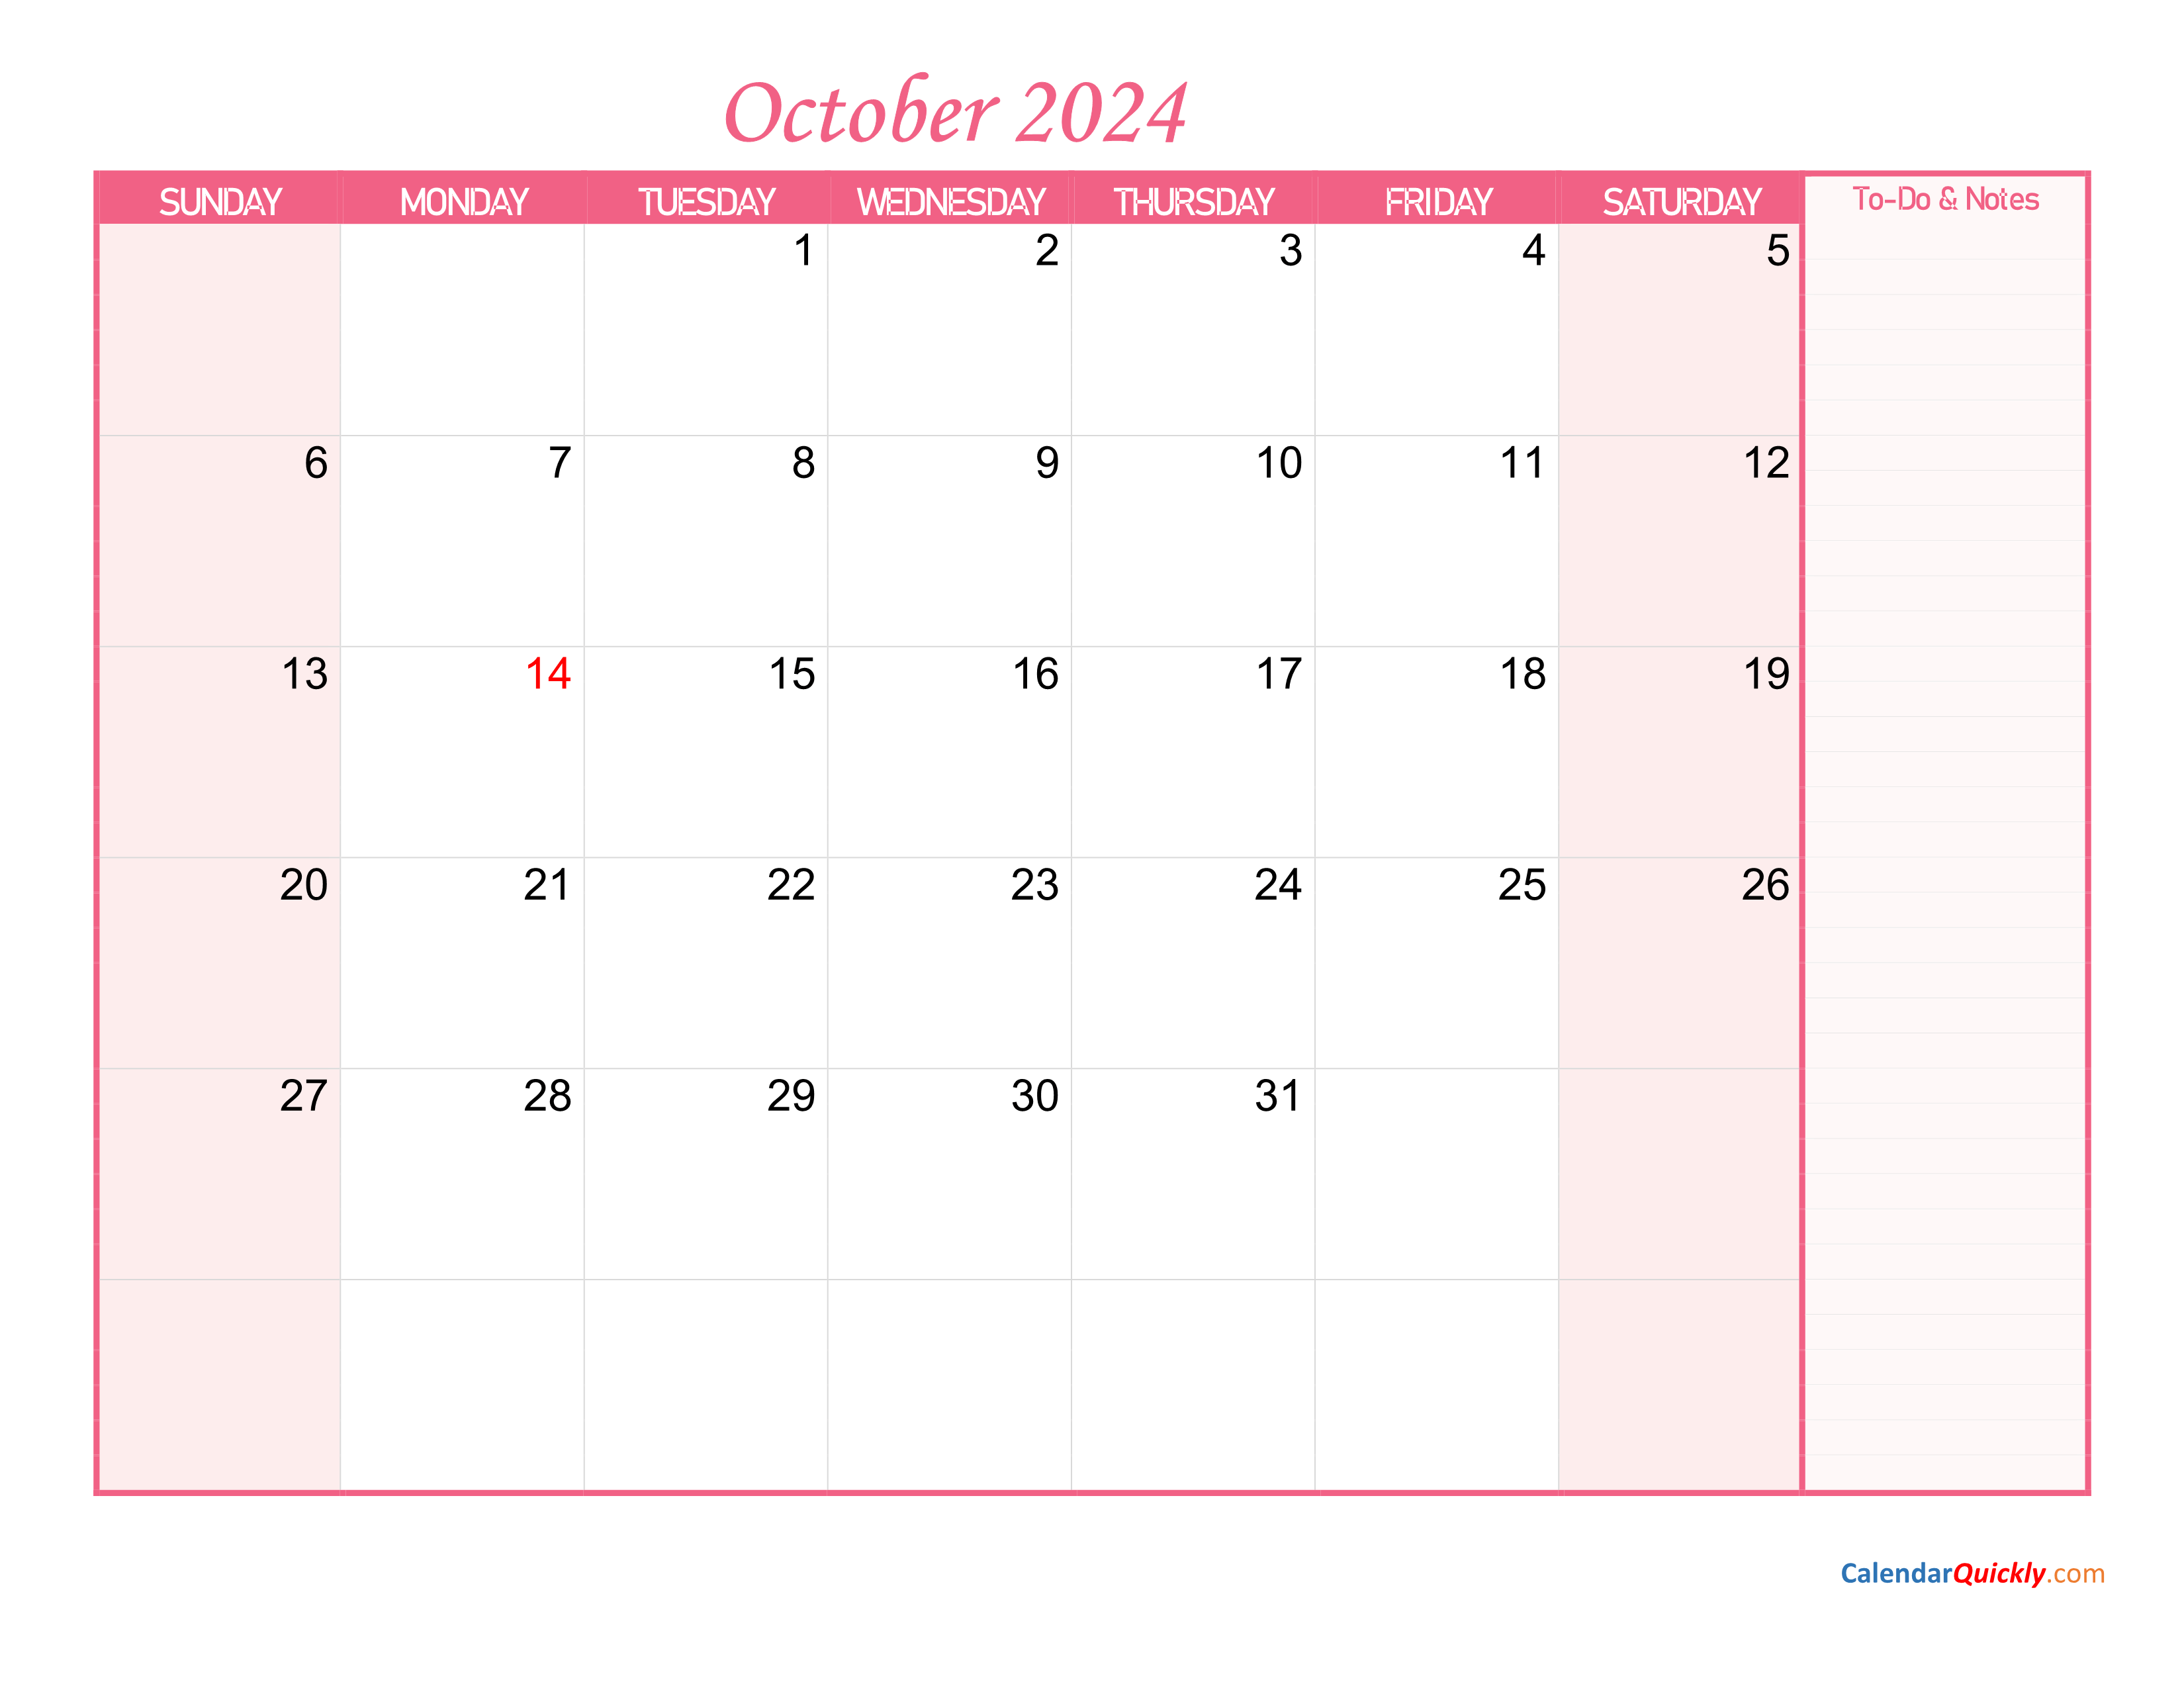 October Calendar 2024 with Notes Calendar Quickly